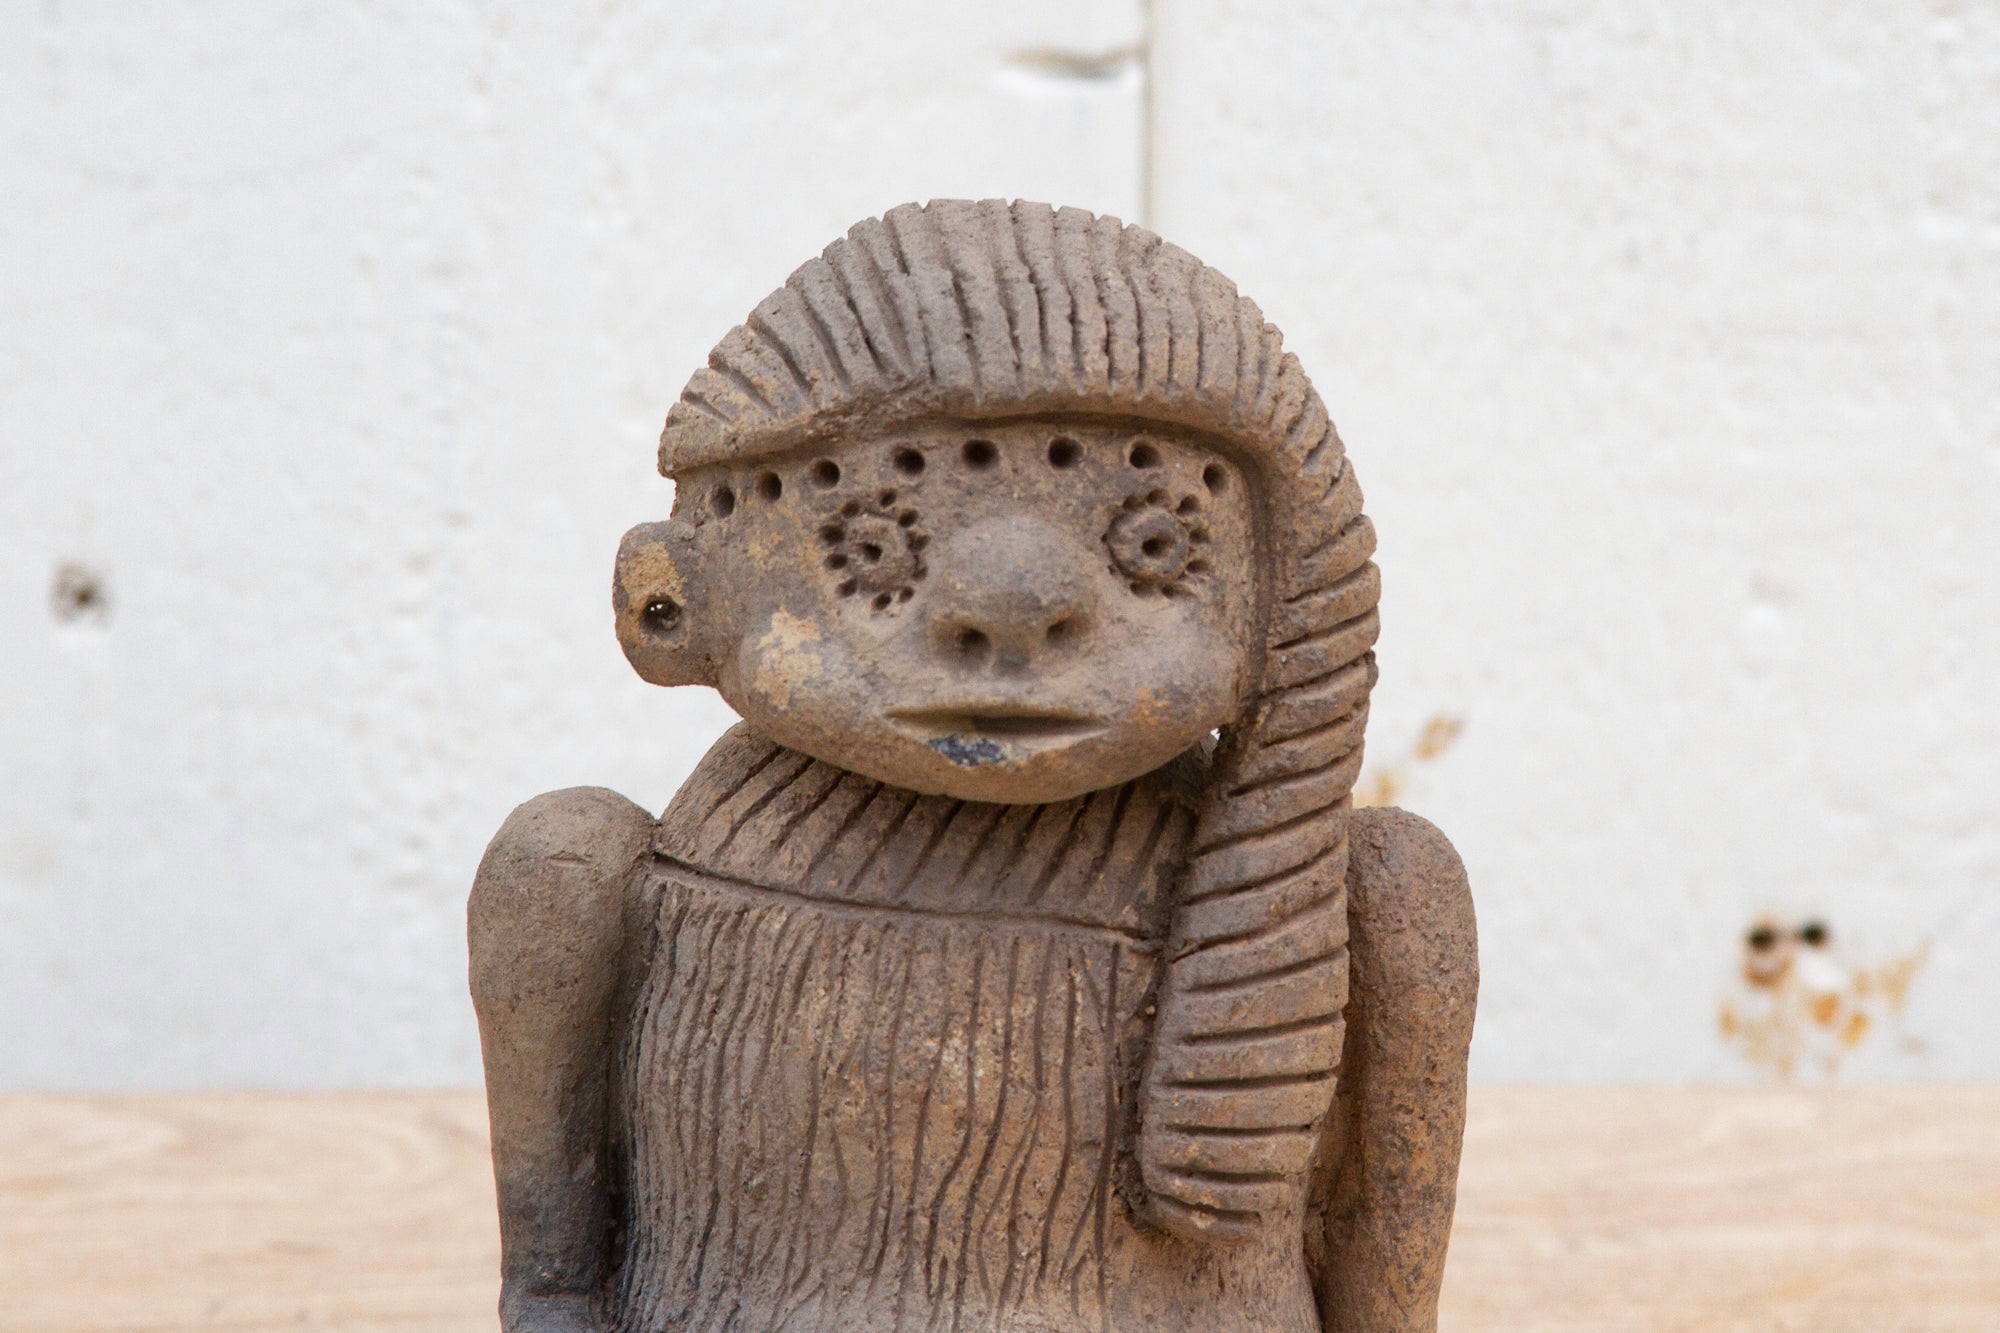 DE-COR | Ispirazione globale, Figura in argilla in stile precolombiano